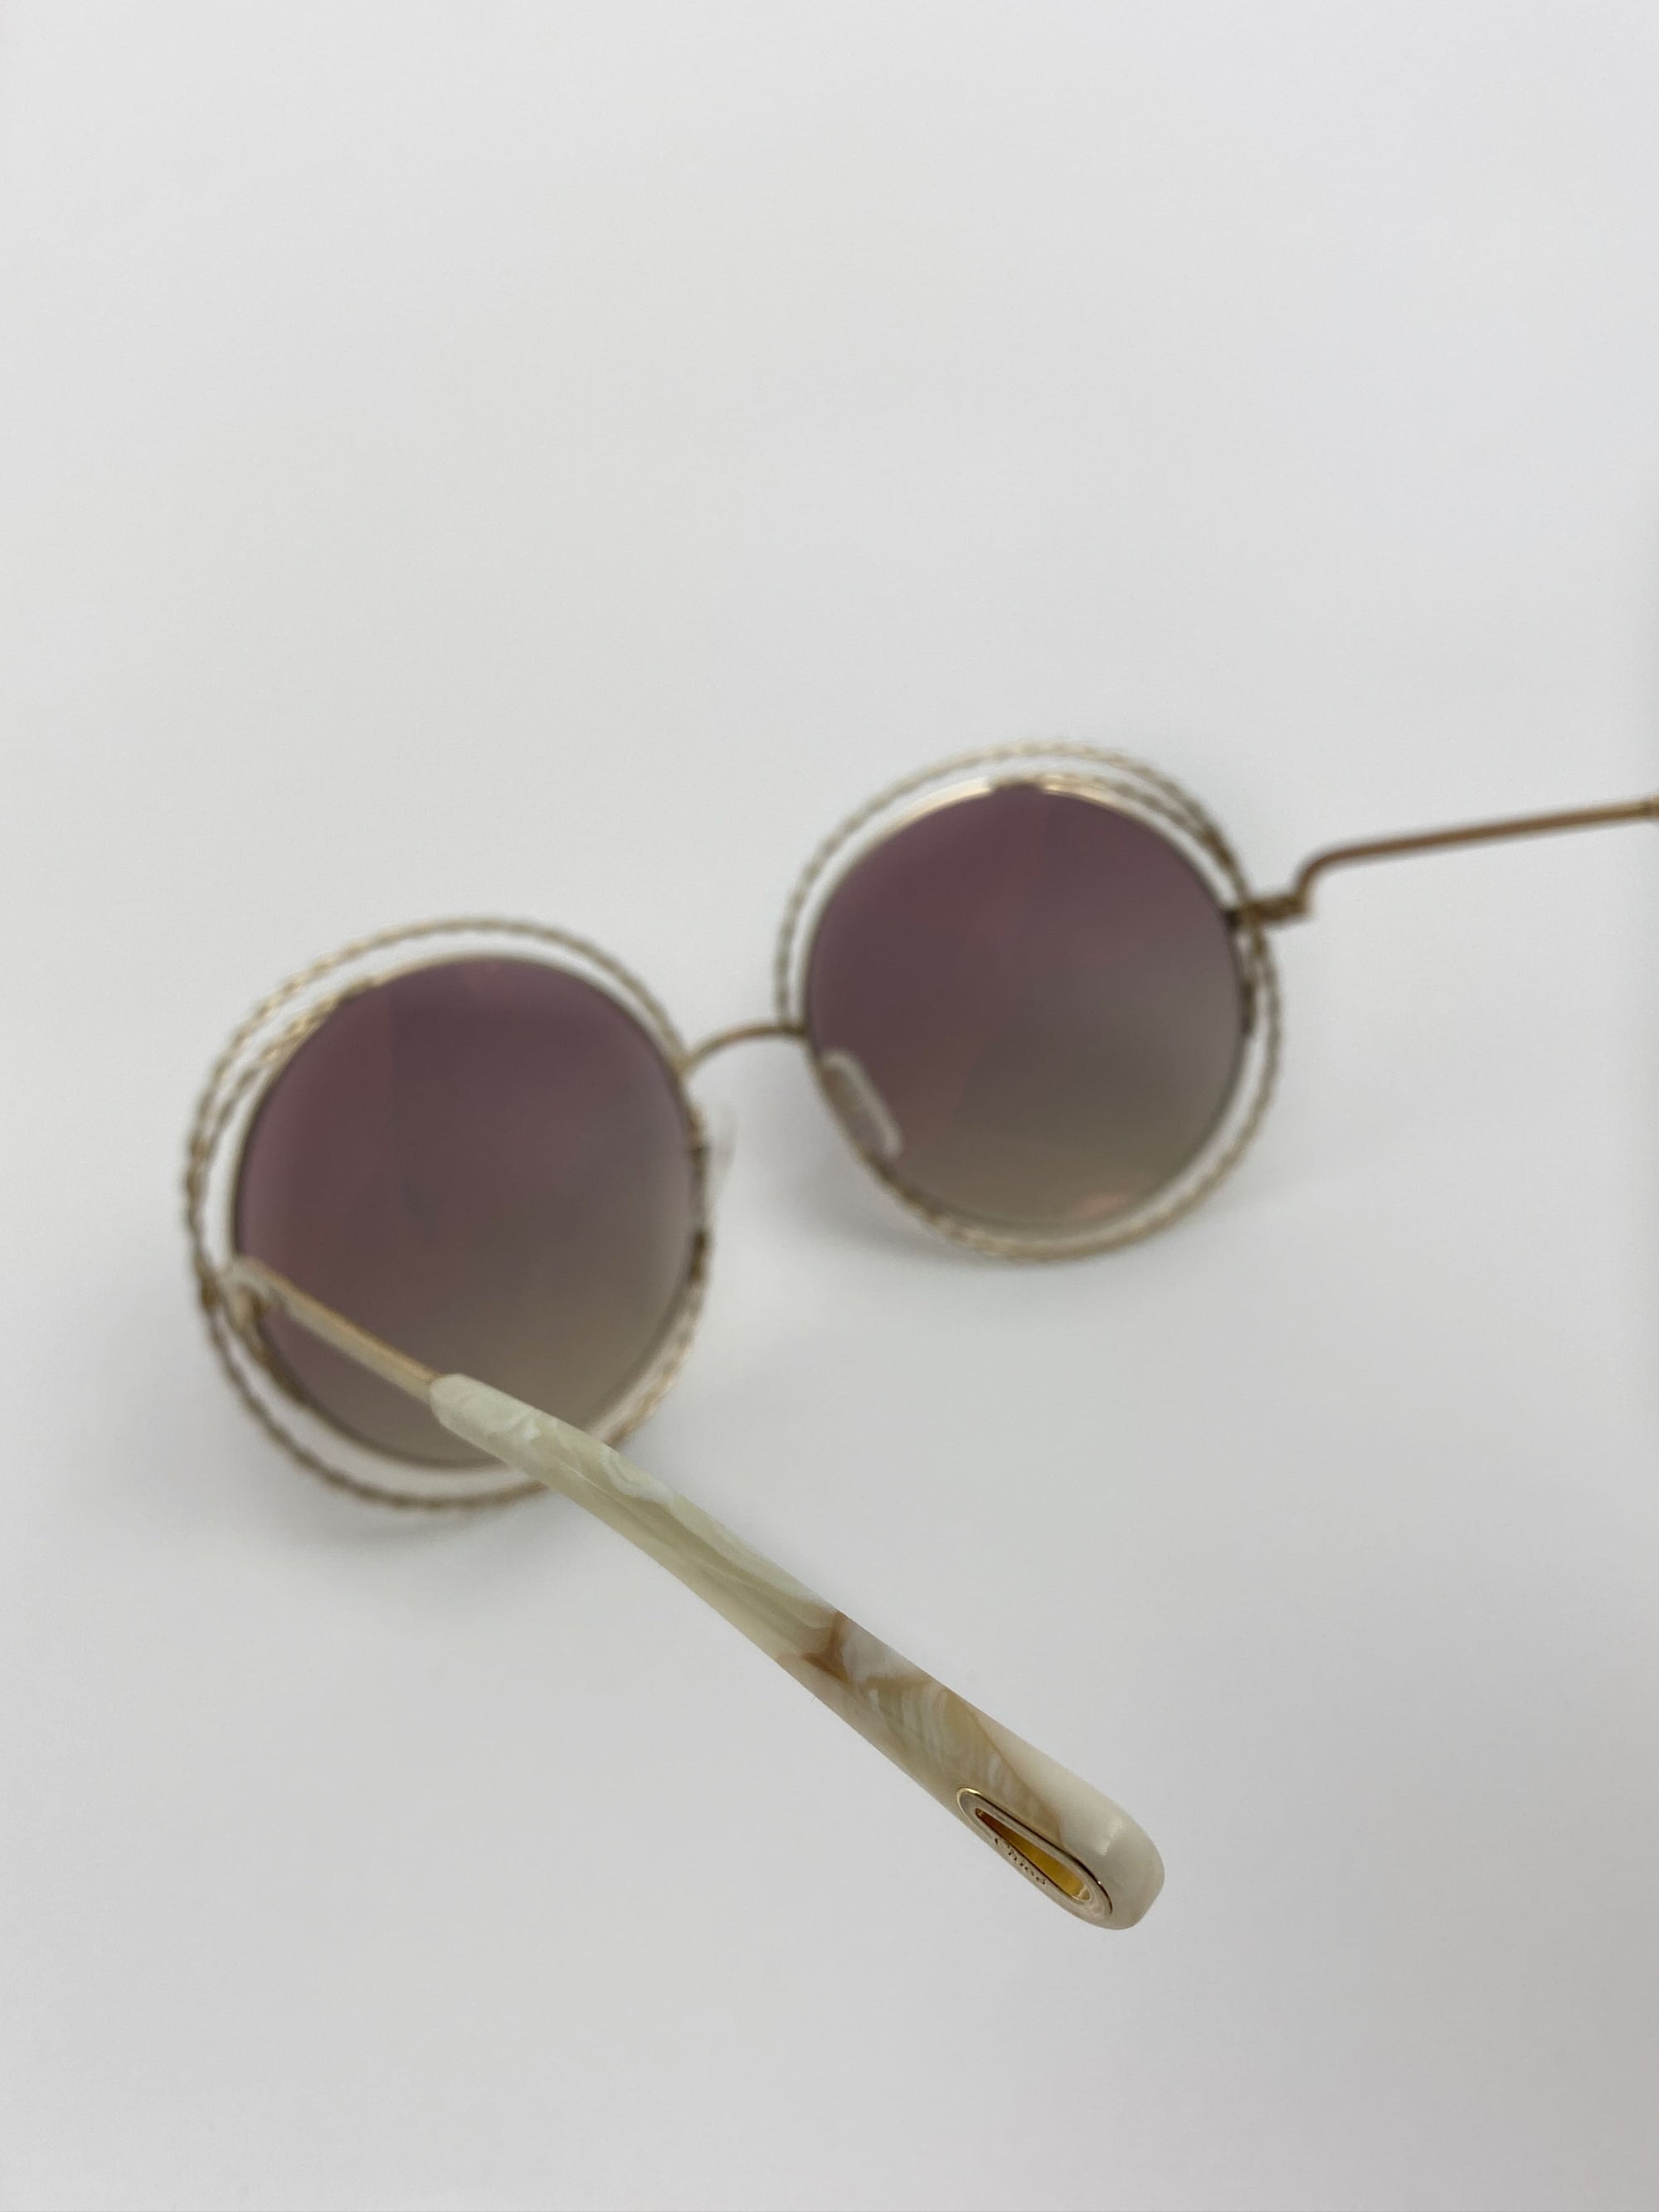 Produktbild der Chloé Sunglasses Nickel gold chains CE114ST 810vom Brillenbügel vor weißem Hintergrund.